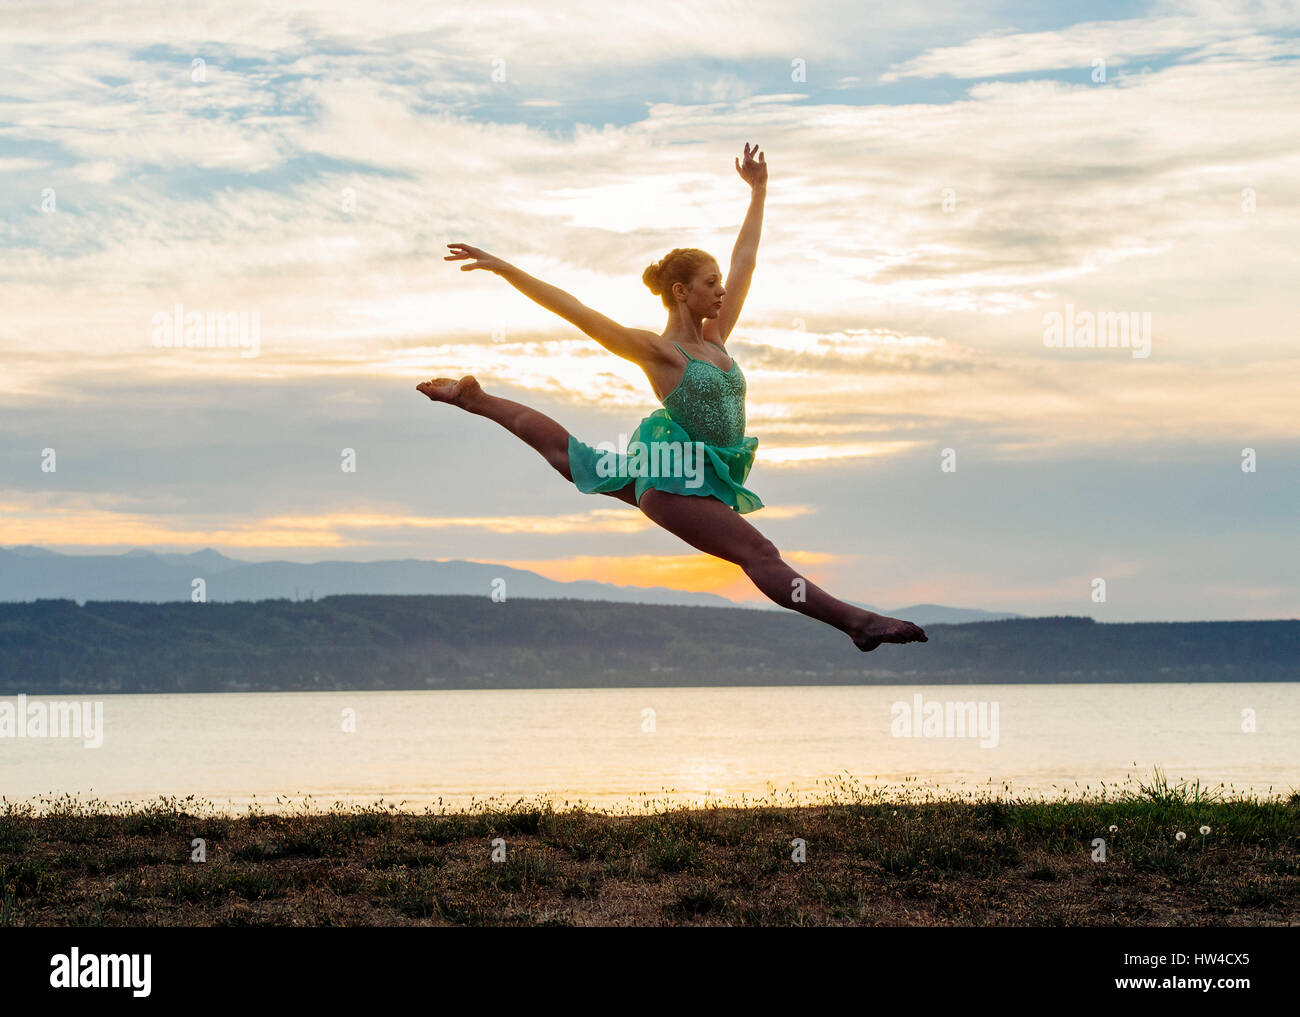 Caucasian ballerina jumping on beach Stock Photo